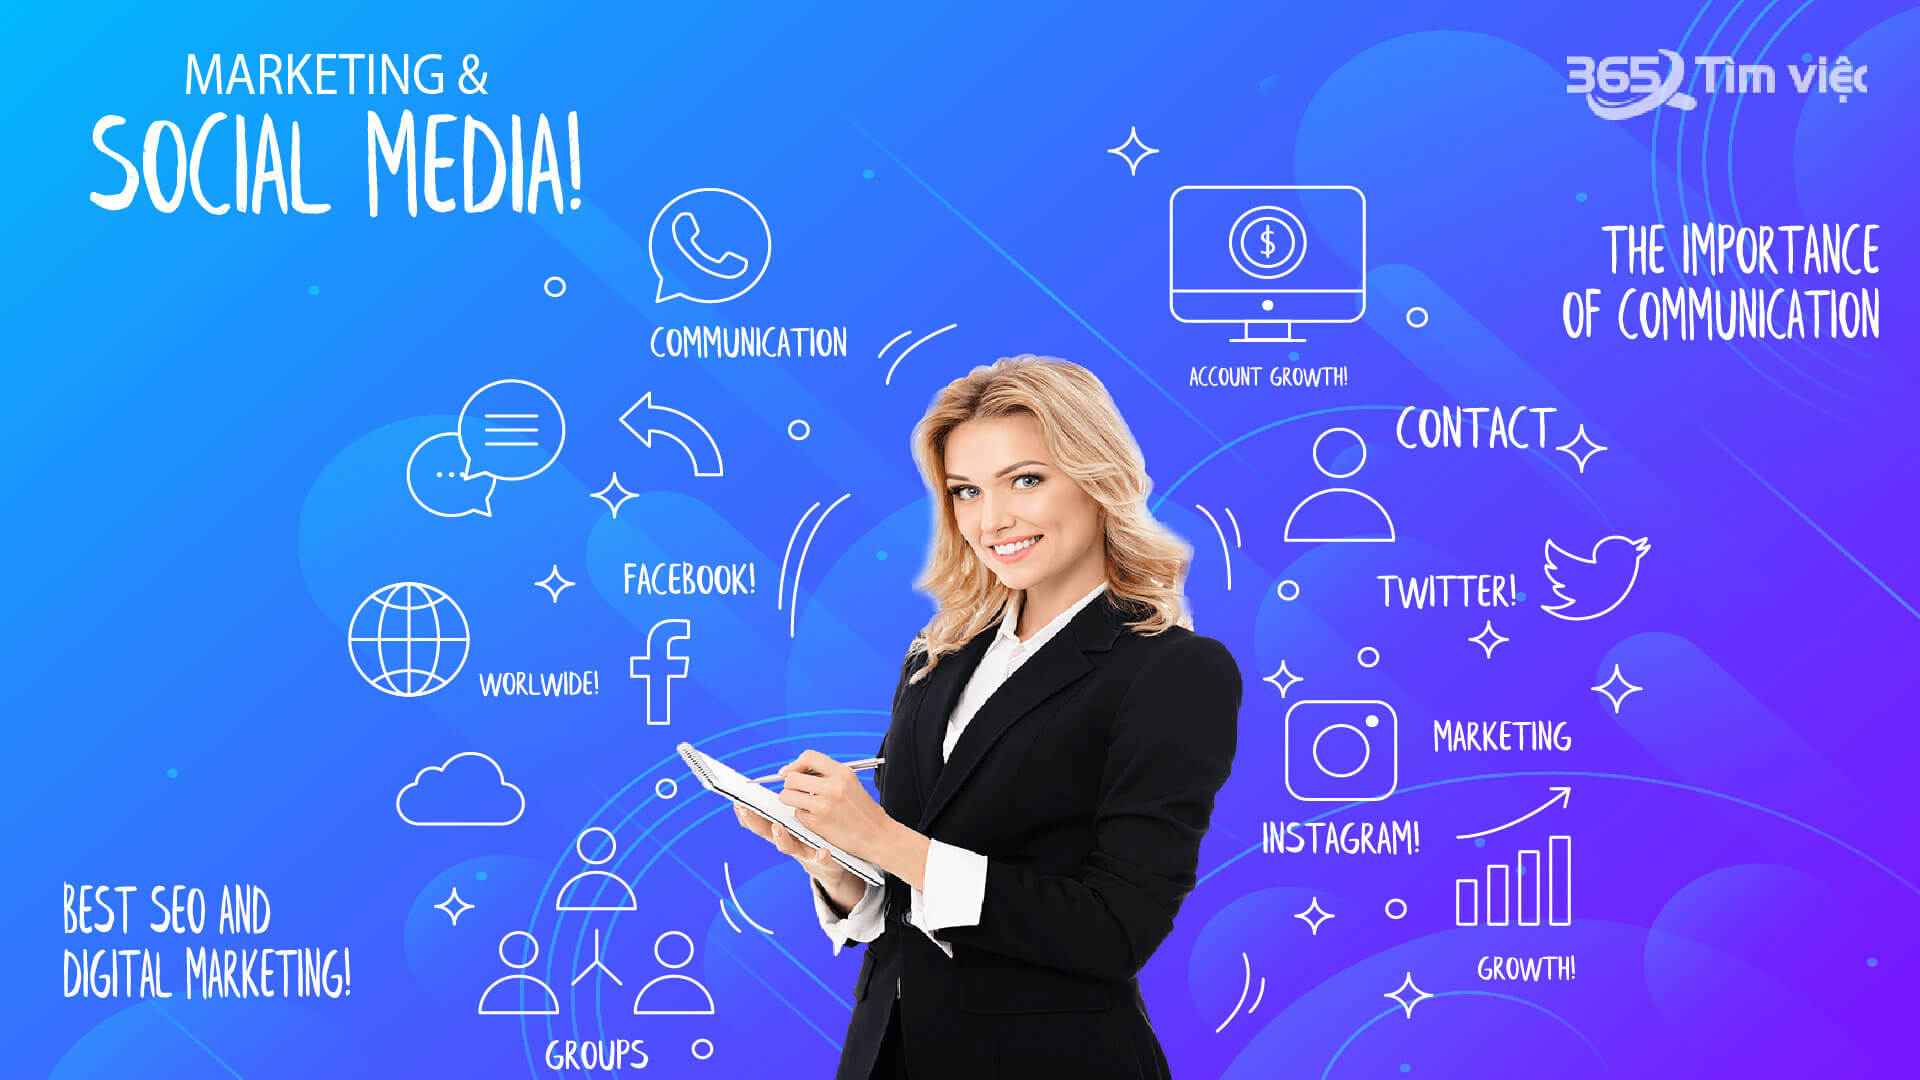 Social media Marketing (qua mạng xã hội)